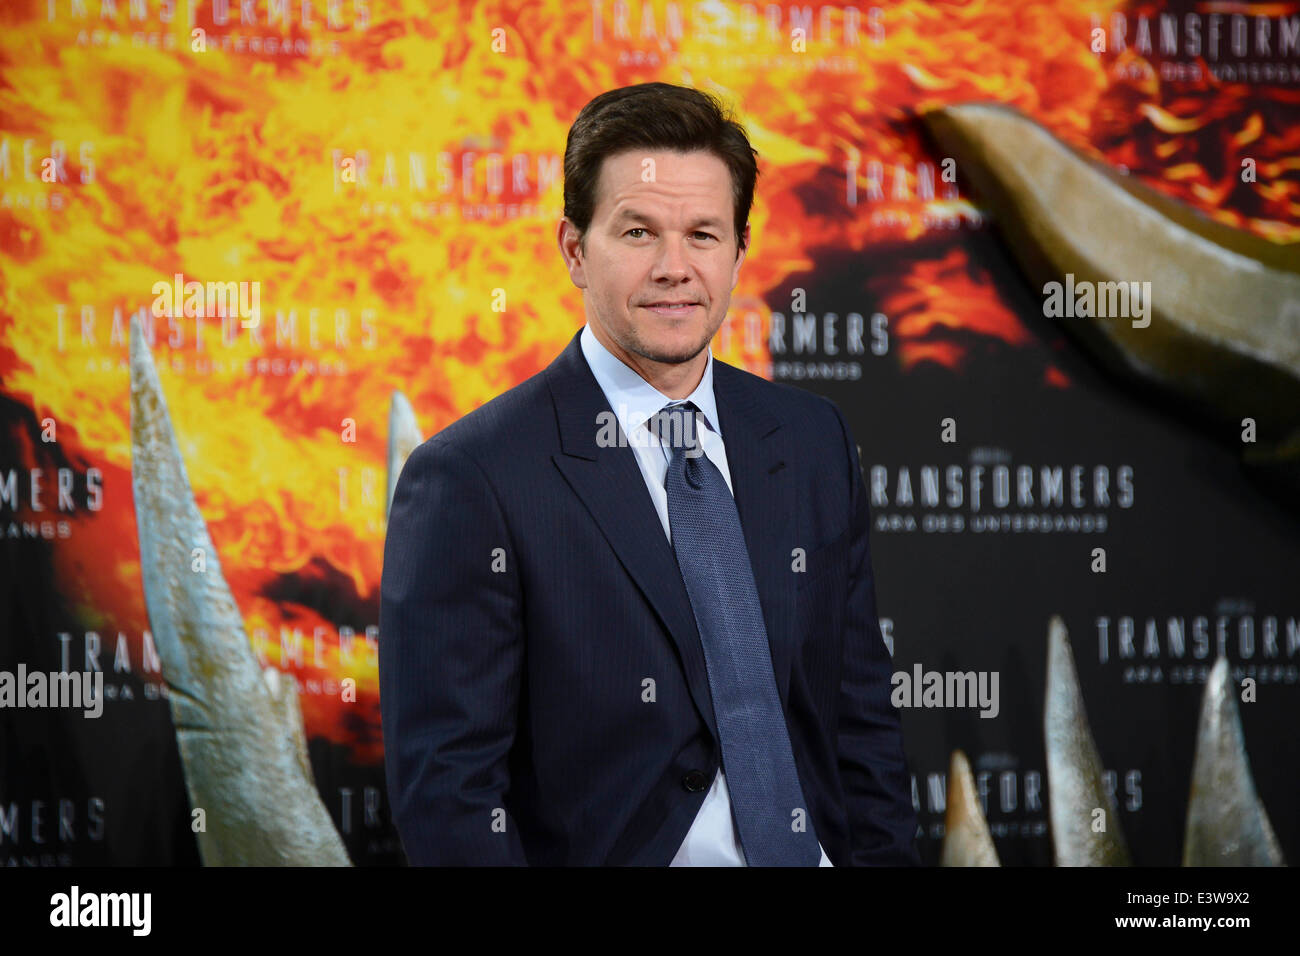 US-Schauspieler Mark Wahlberg besucht die Premiere von "Transformers - Jahren vom Aussterben bedroht" in Berlin. Stockfoto